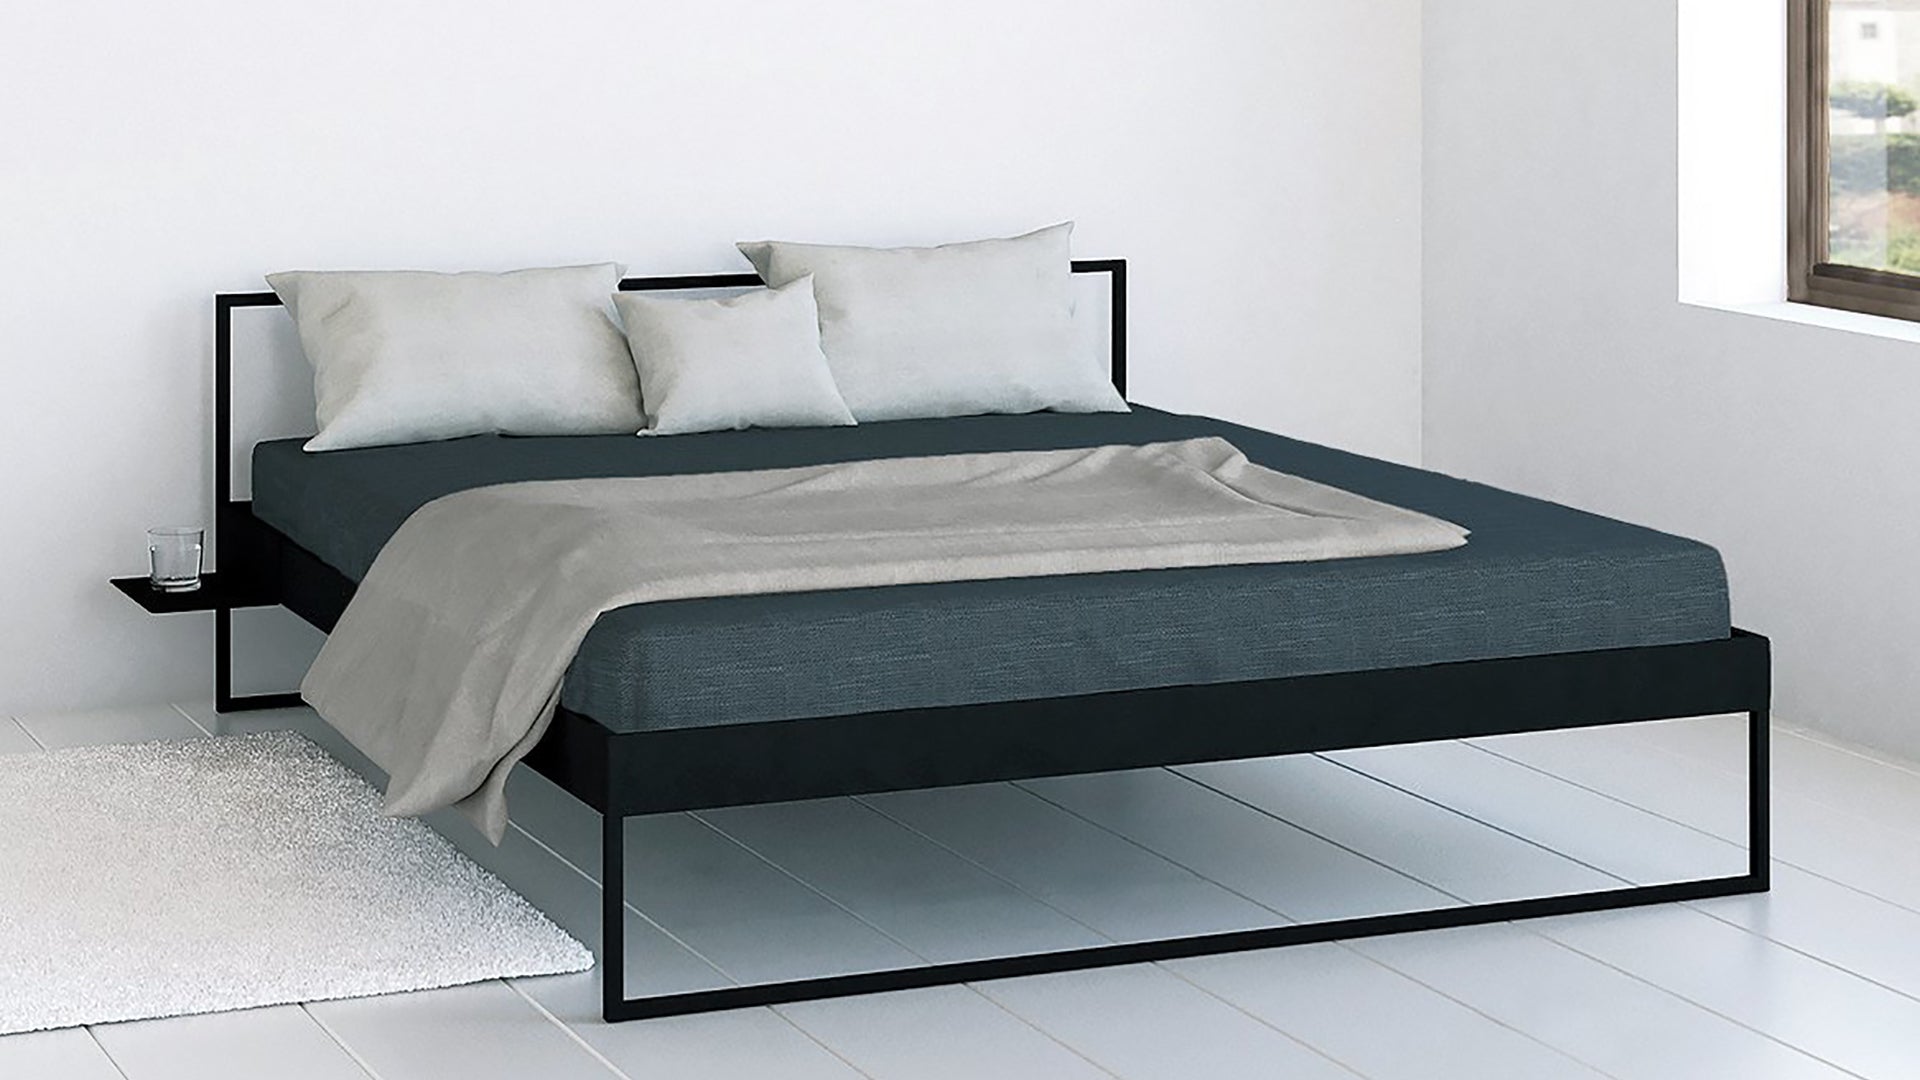 Minimalistische design bedden | Minimalist design beds | Camas minimalistas